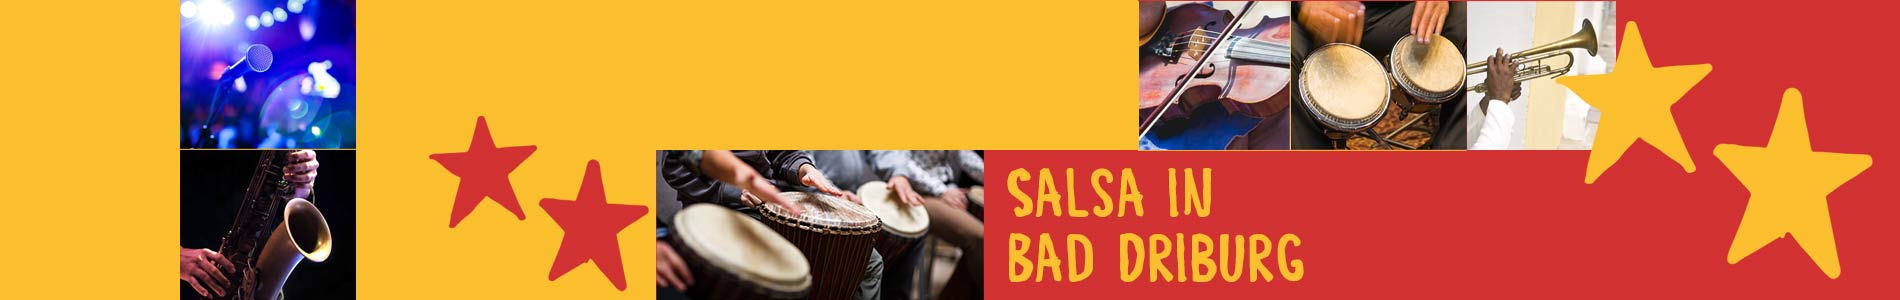 Salsa in Bad Driburg – Salsa lernen und tanzen, Tanzkurse, Partys, Veranstaltungen